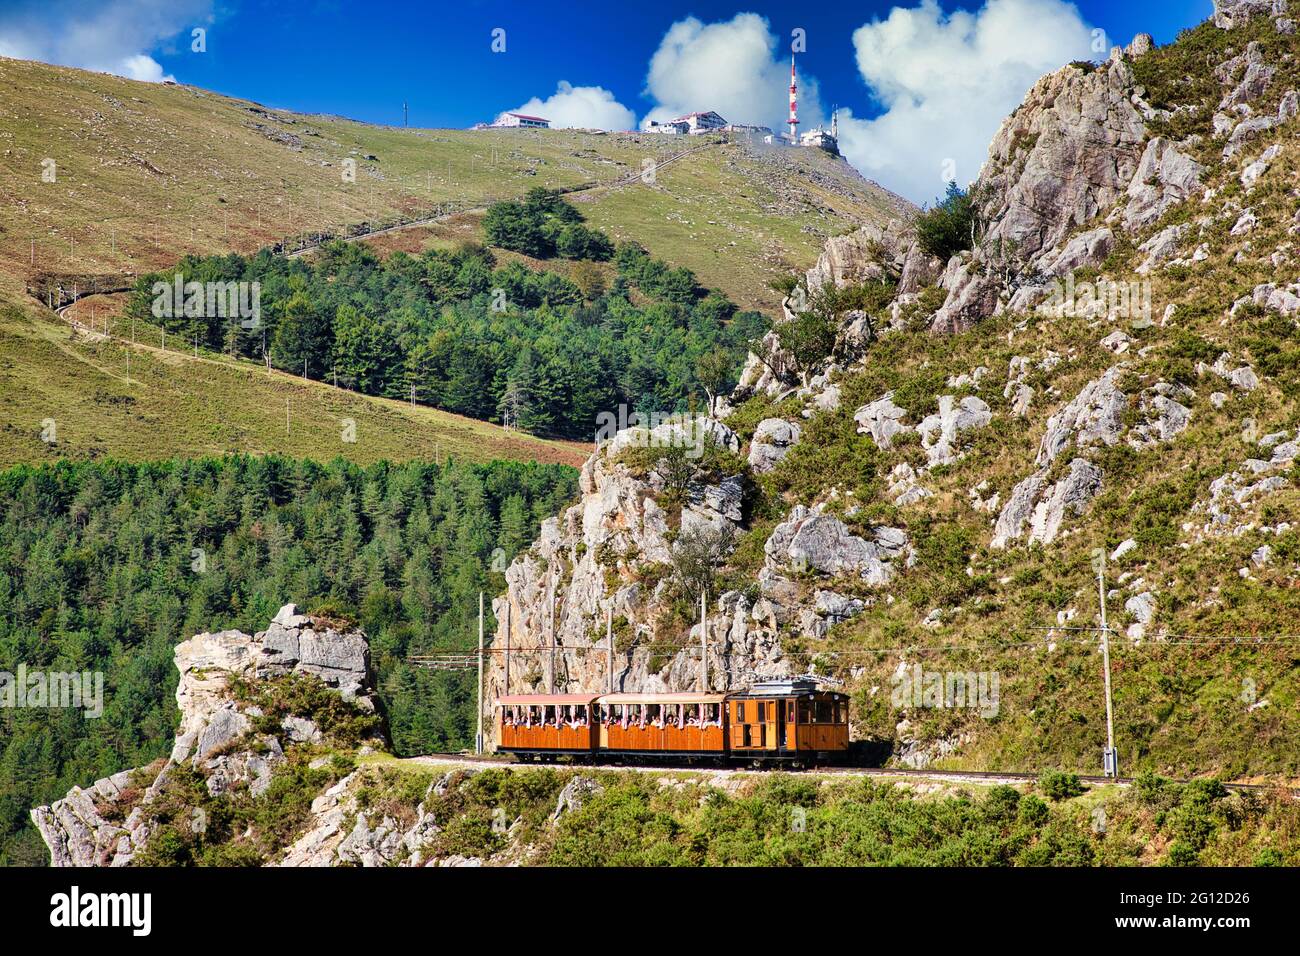 Tren de Larrune, Le Train de La Rhune, Sare, Languedoc-Roussillon, Pyrenees Atlantiques, Frankreich, Europa Stockfoto